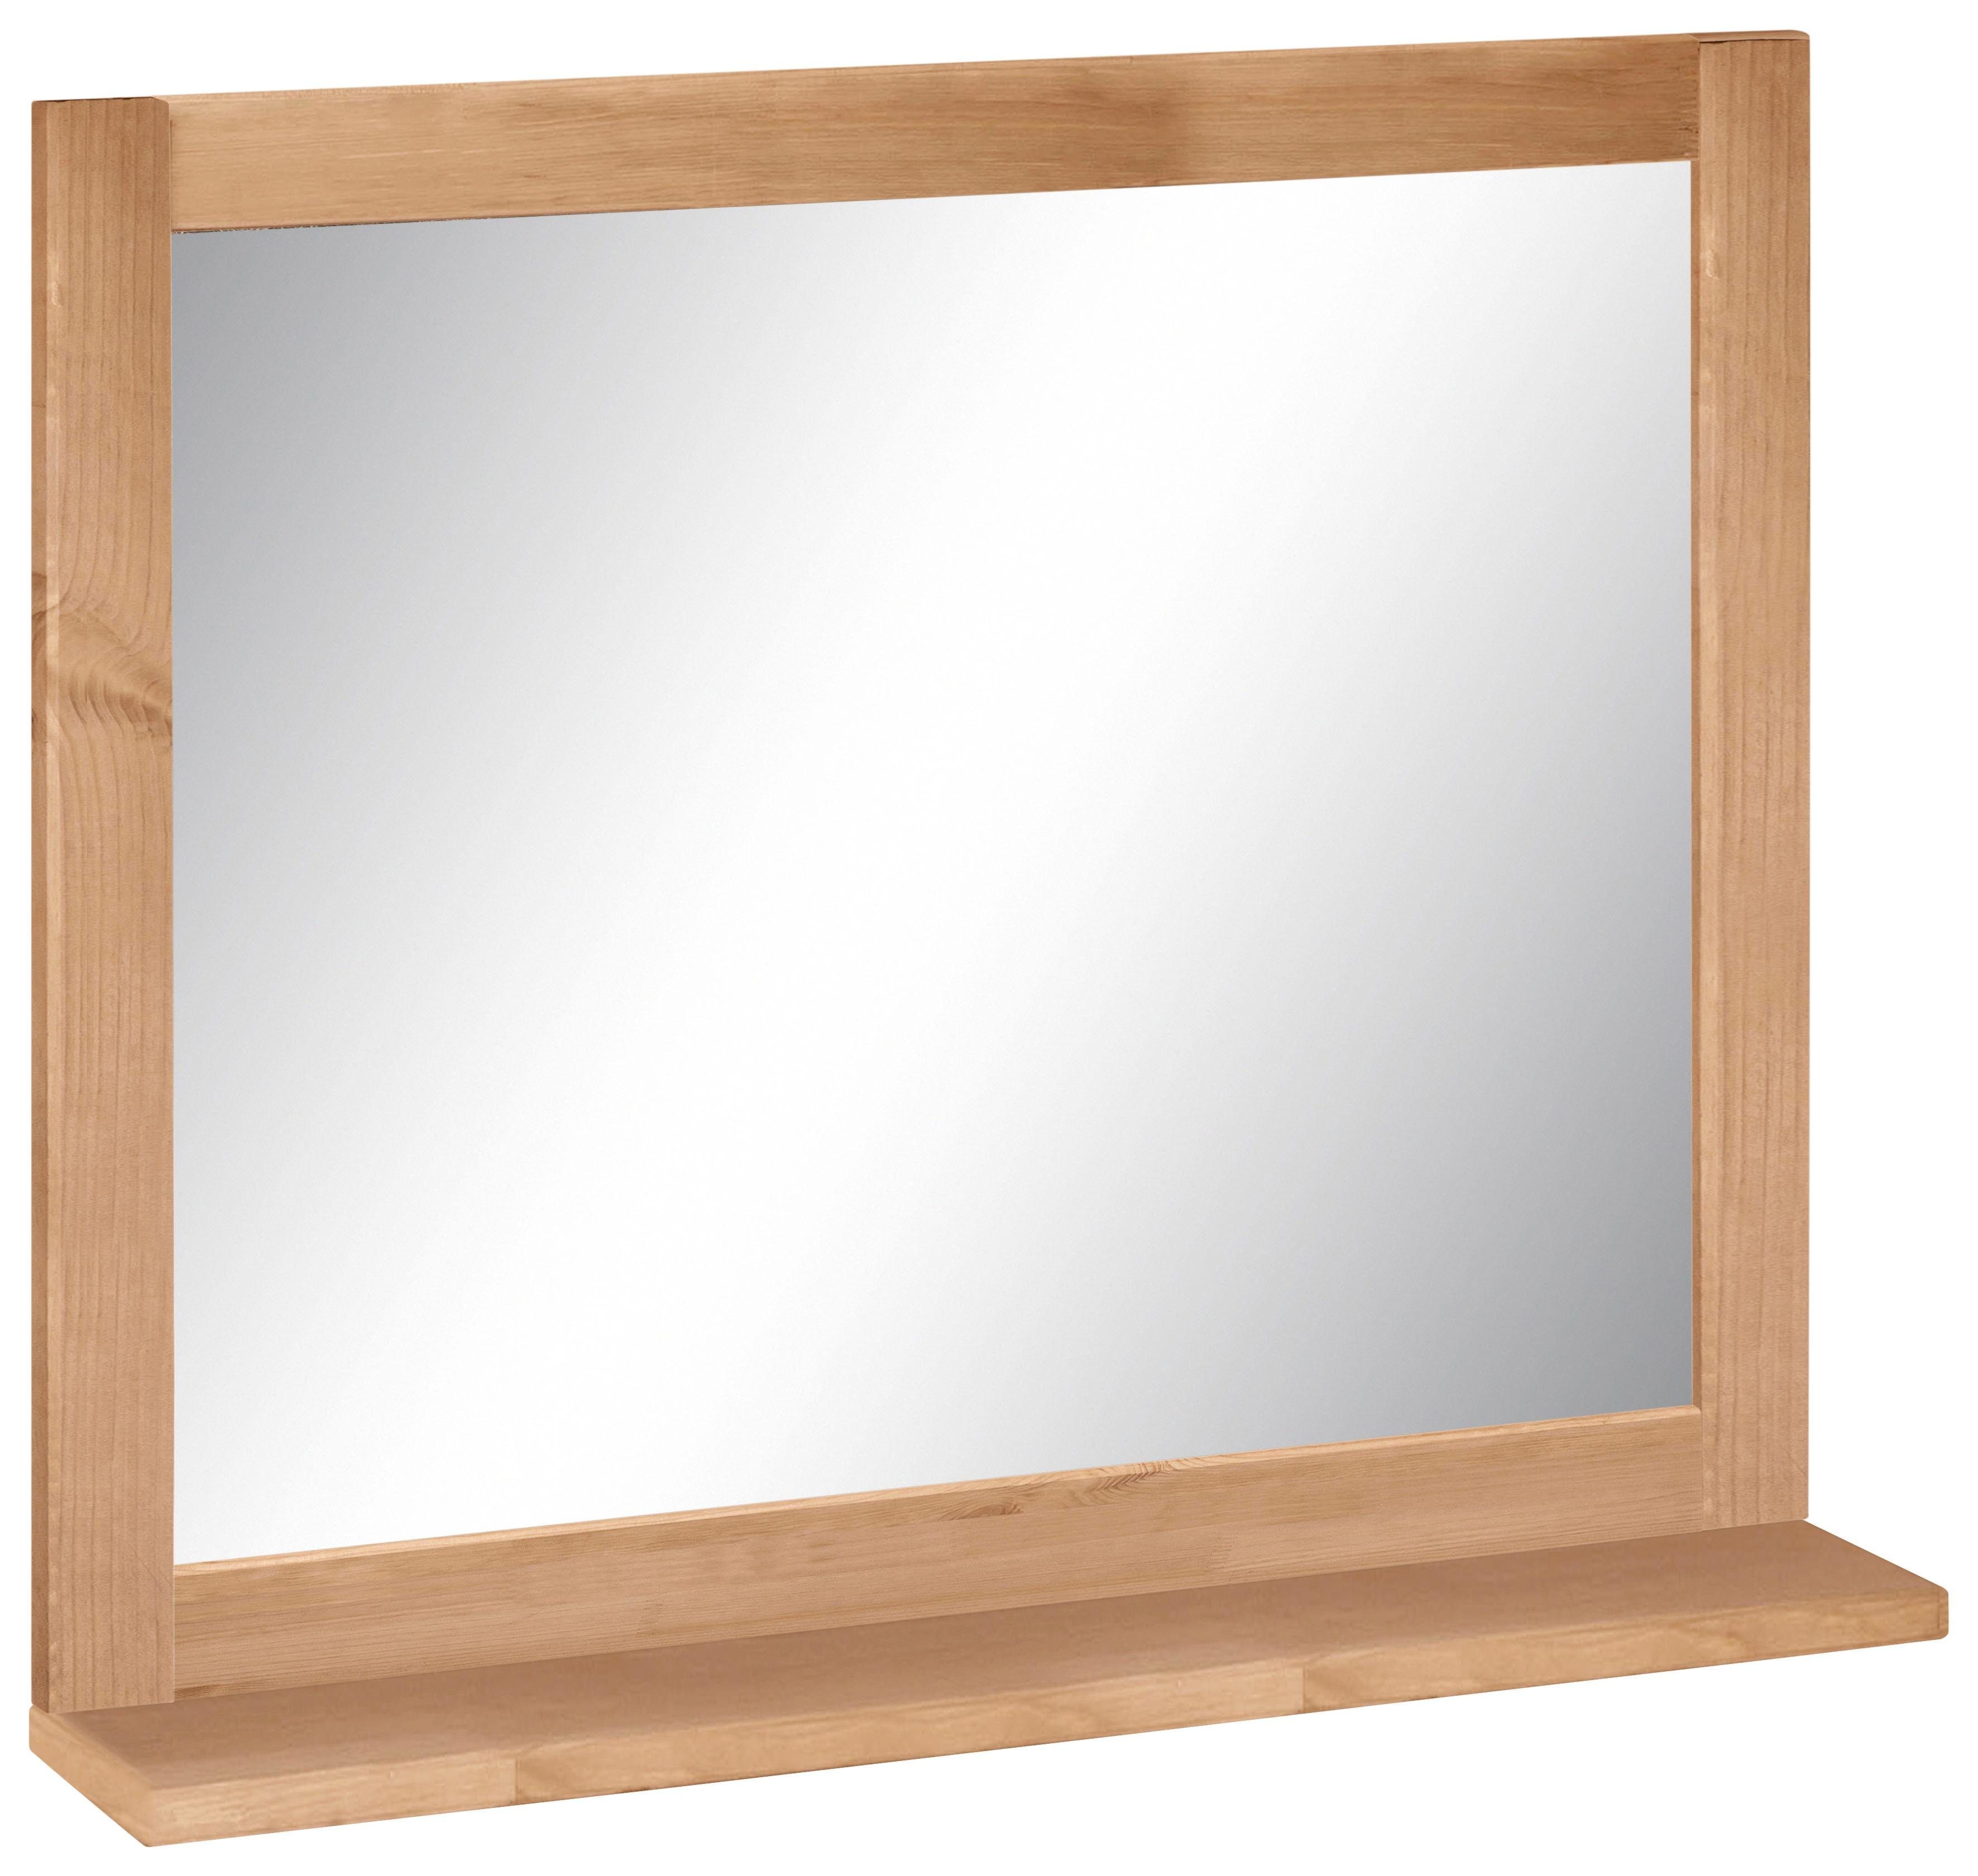 Home affaire Wandspiegel »Westa«, Breite 60 cm, Badezimmerspiegel mit  Rahmen, Massivholz, Kiefernholz, 1 Ablage online kaufen | OTTO